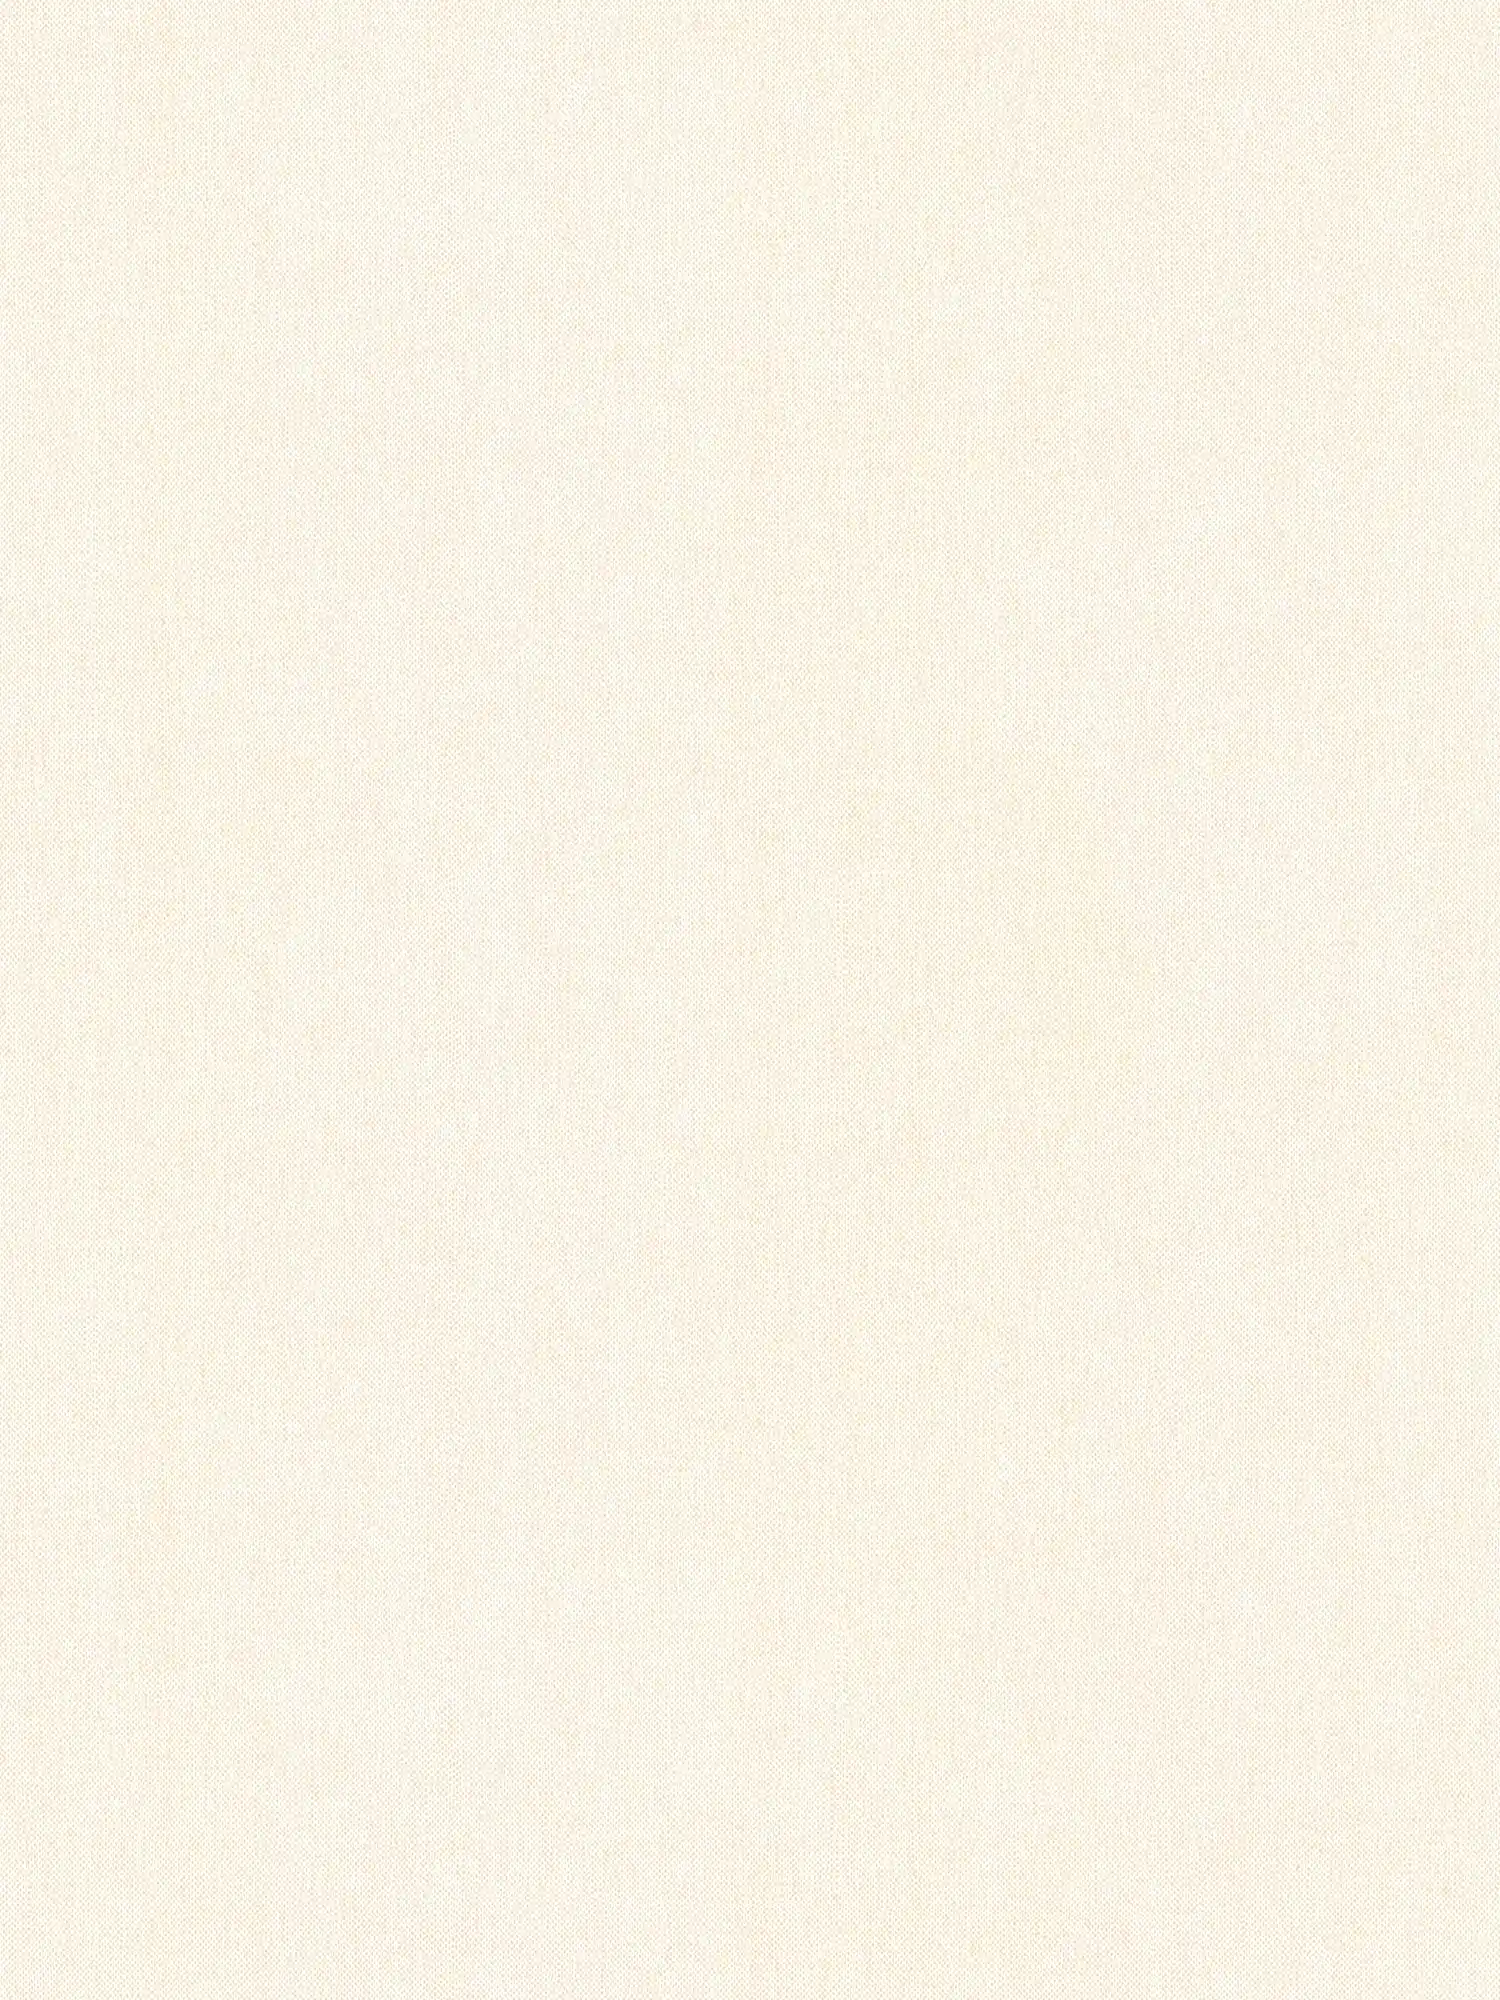 Wallpaper vintage white & matte with textile texture - white, cream
